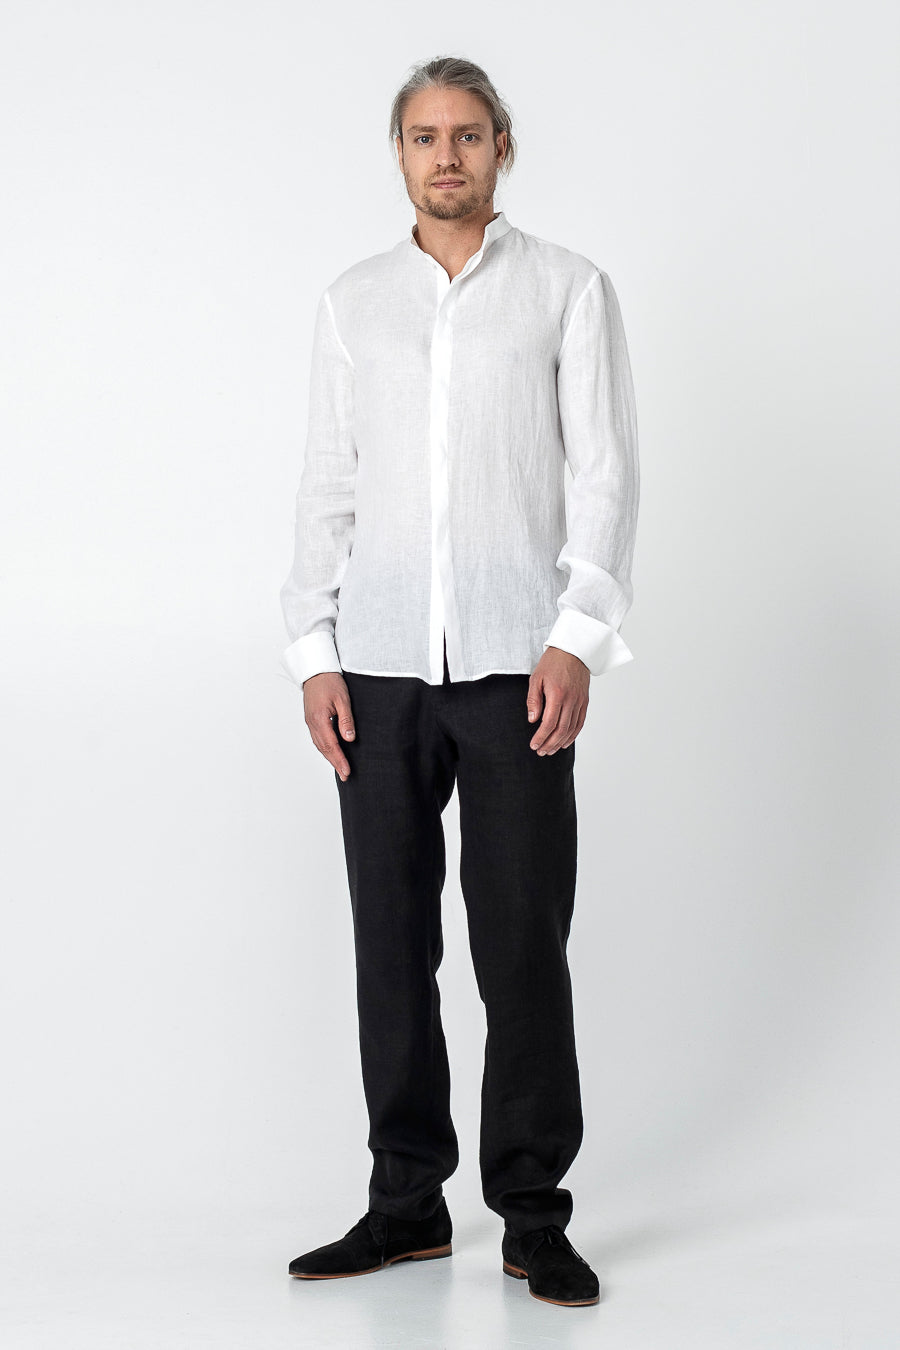 ENMEI | Linen dress shirt - Mezzoroni